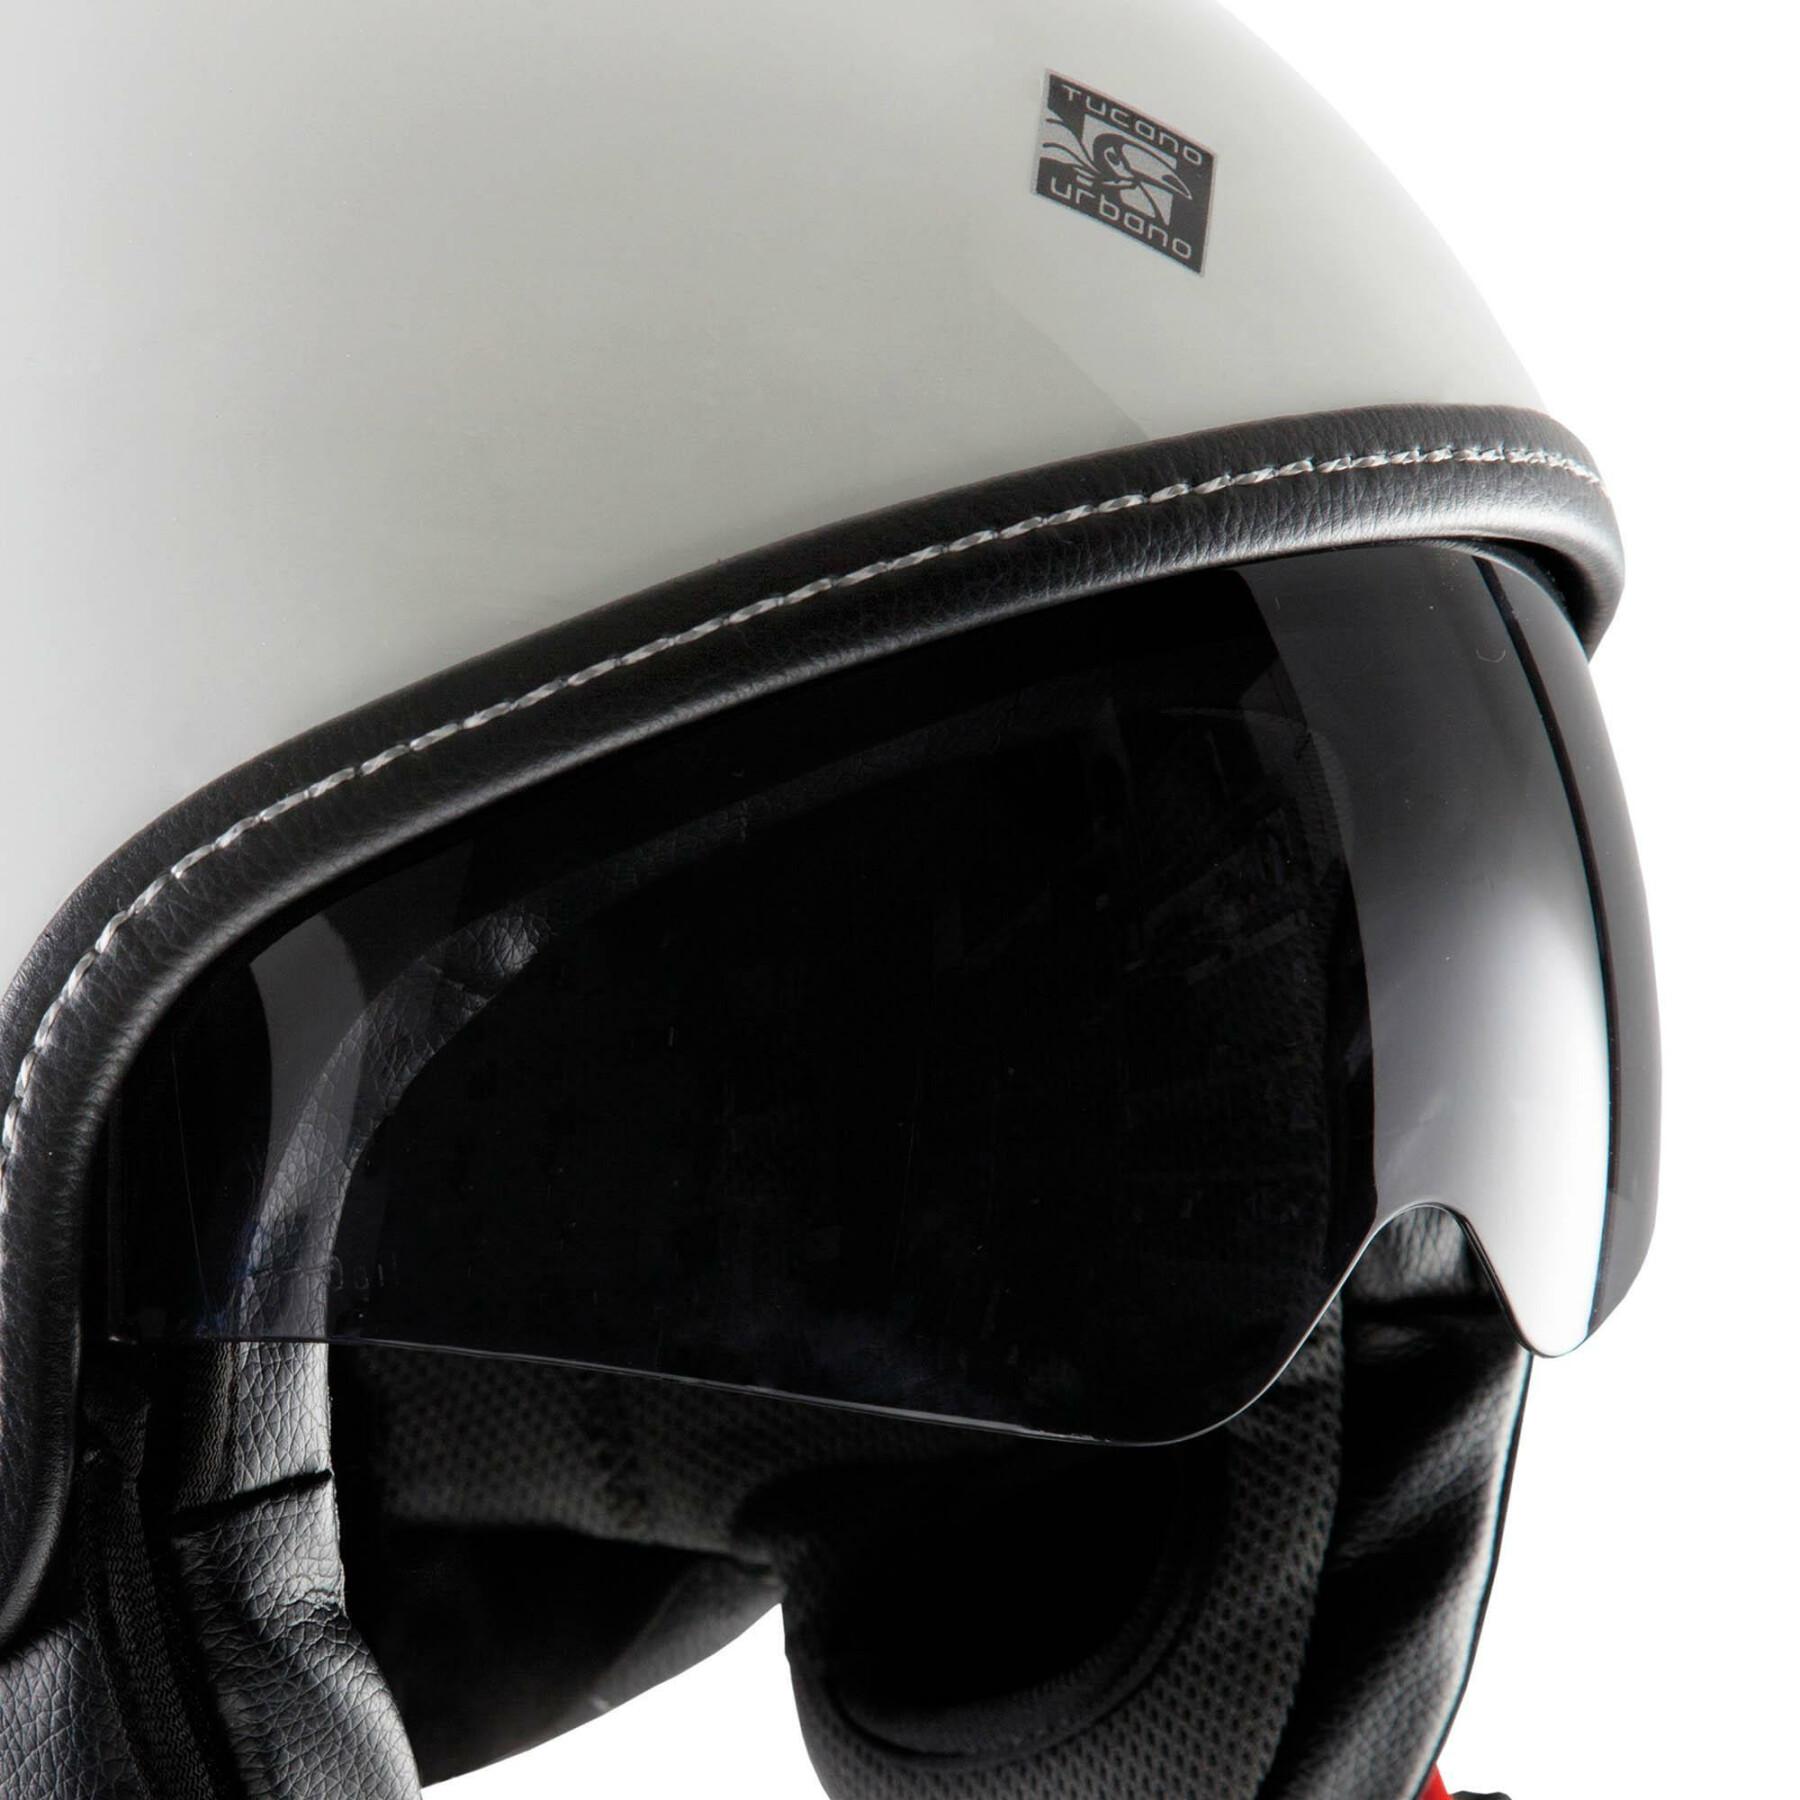 Visera solar para casco de moto Tucano Urbano El'Mettin - El'Fresh - El'Top